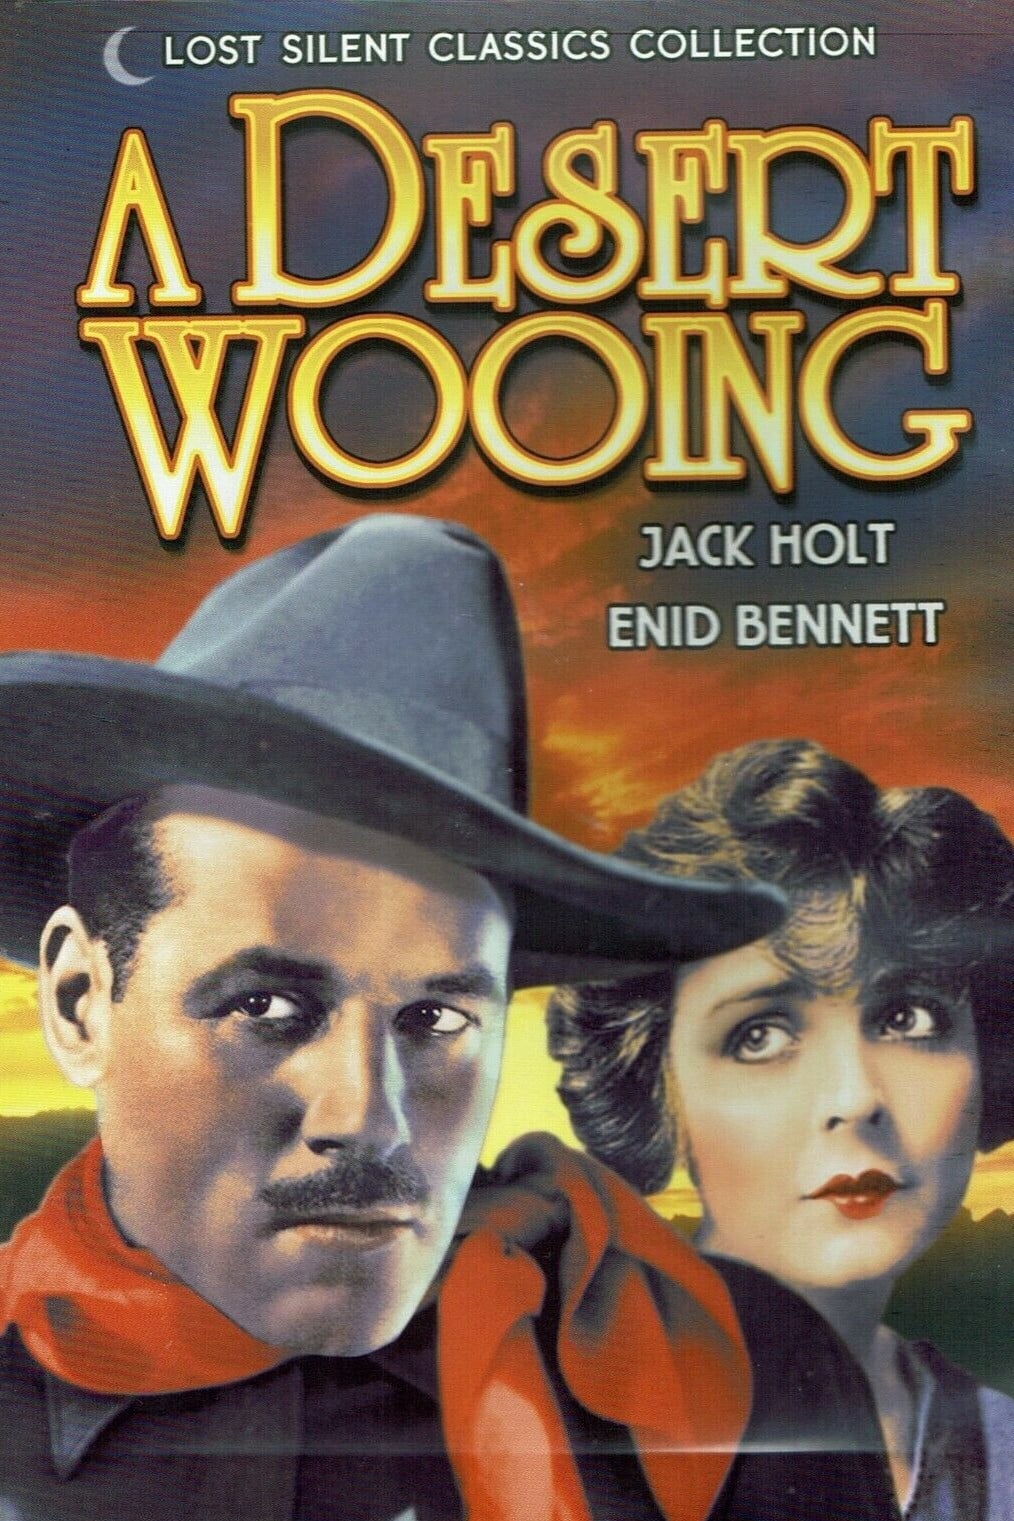 A Desert Wooing (1918)